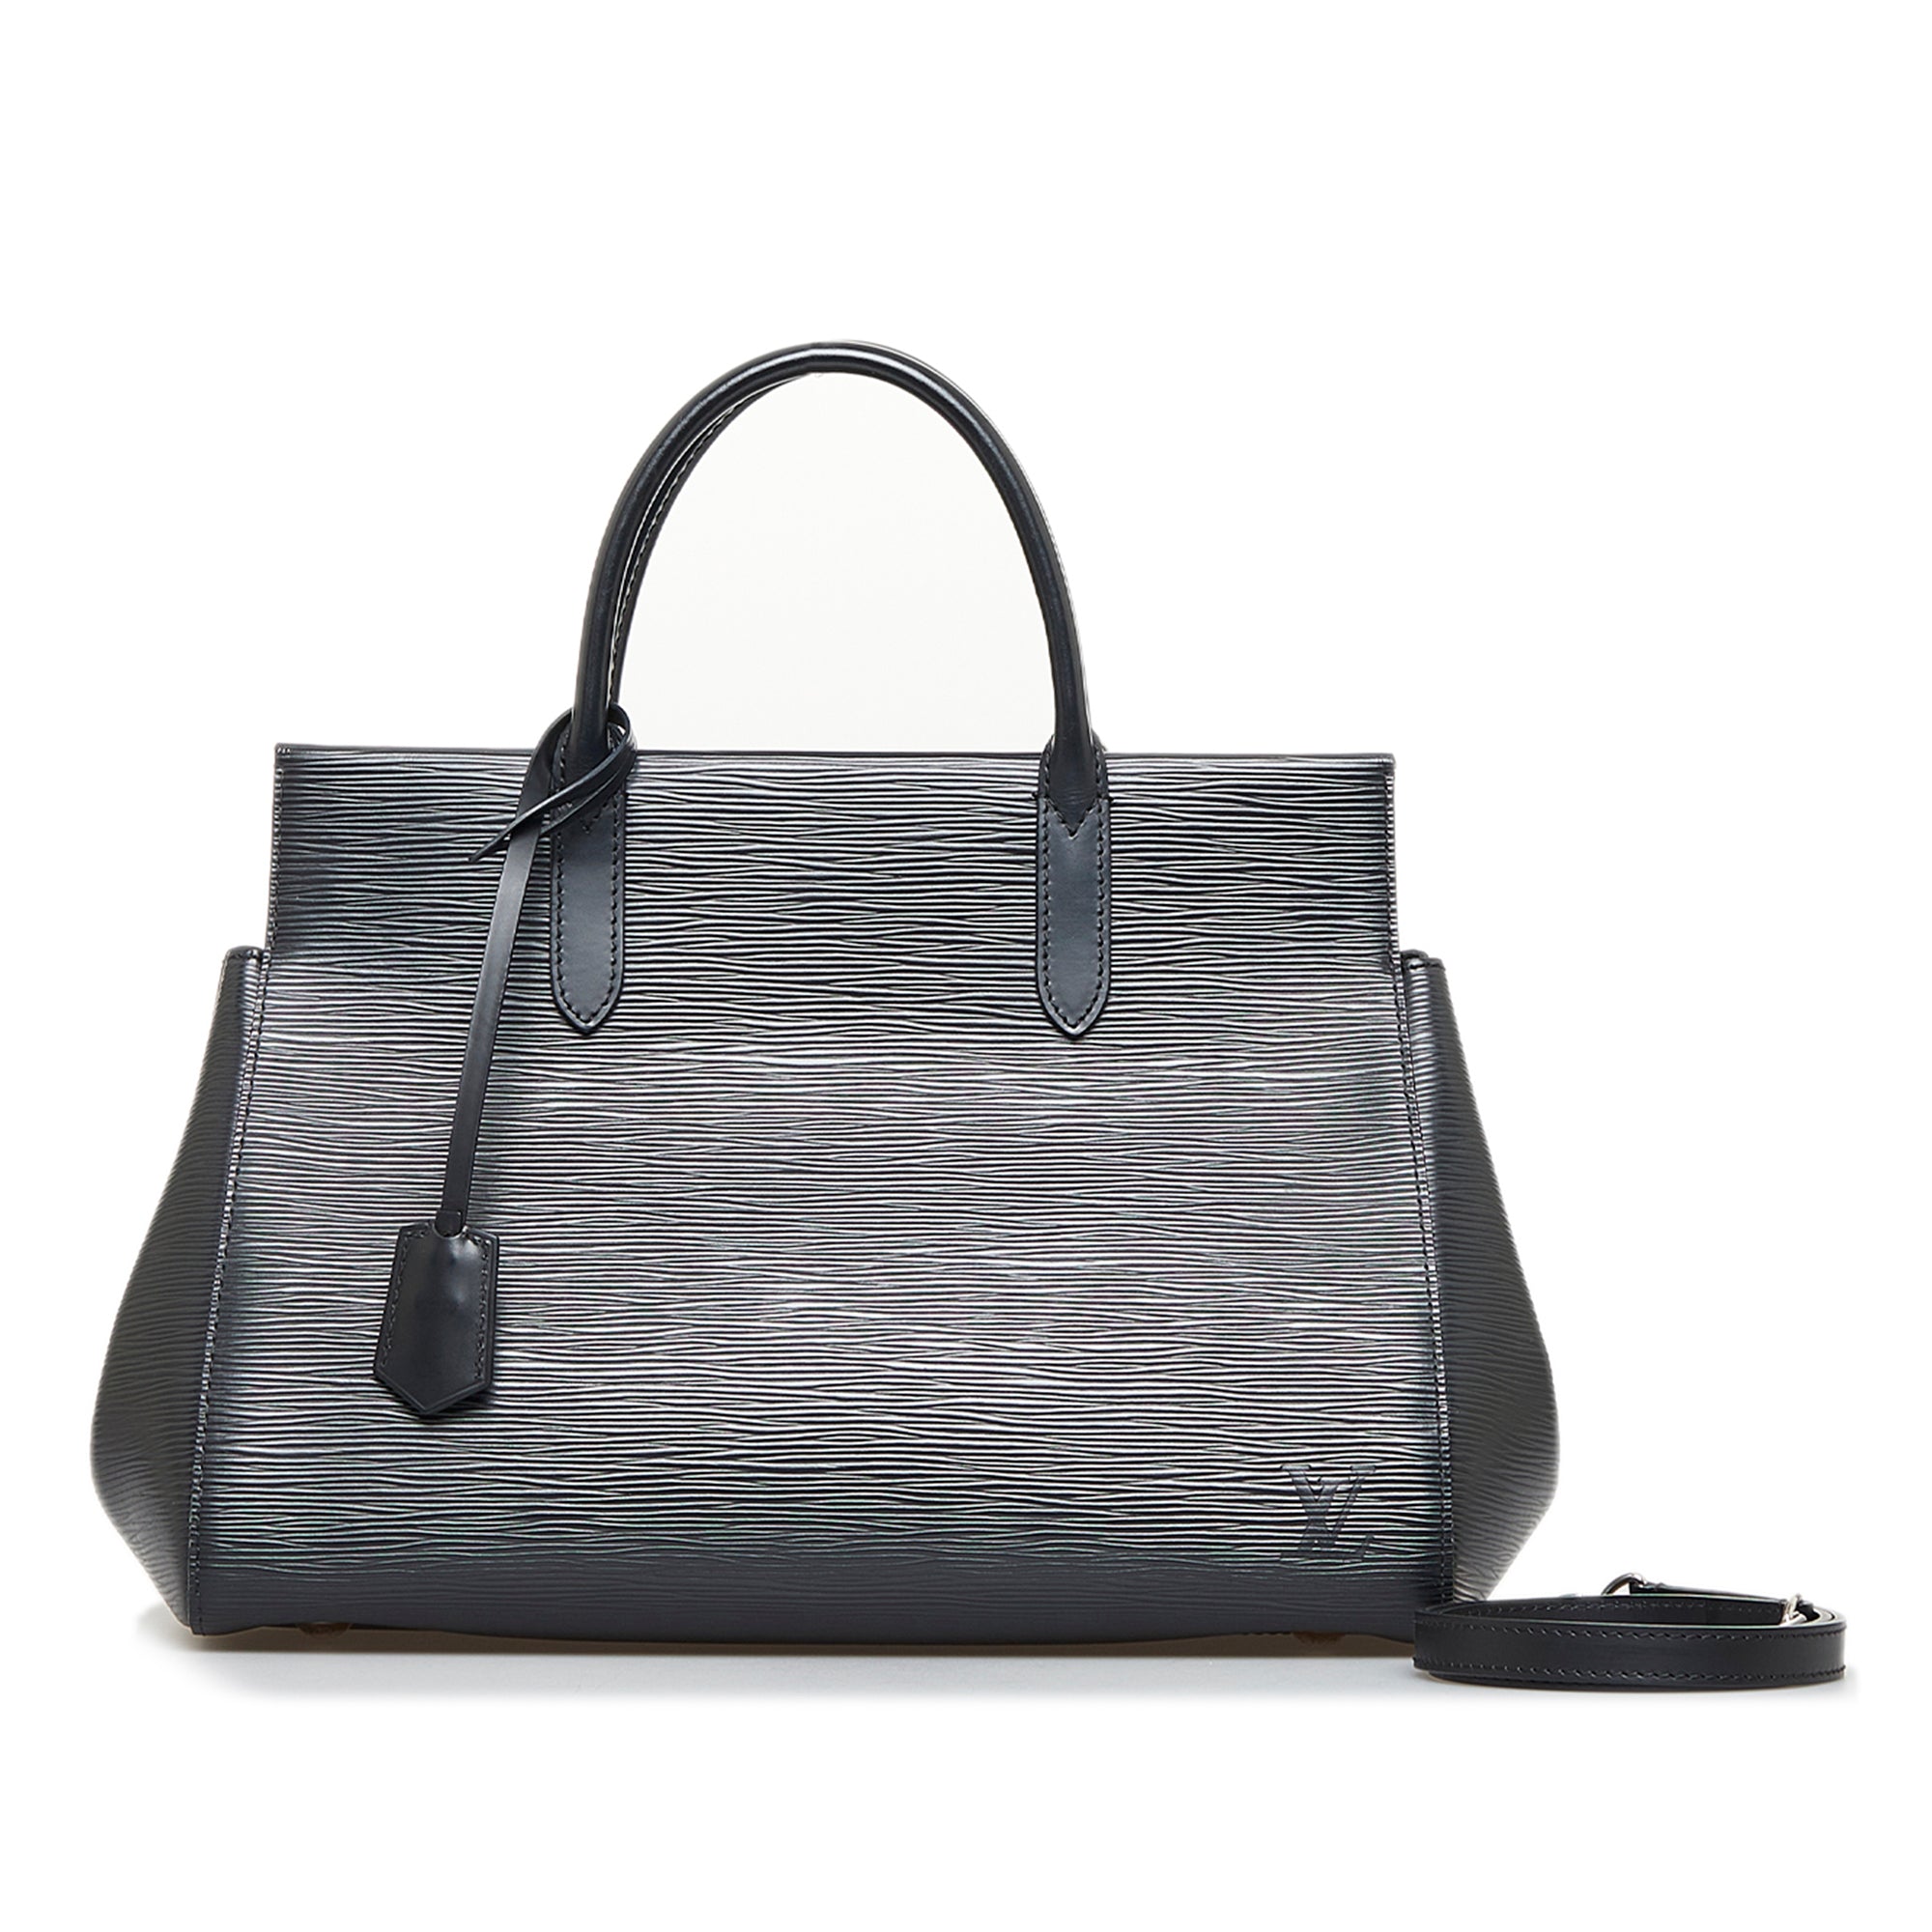 LOUIS VUITTON Authentic Women's Epi Clutch Bag Hand Bag